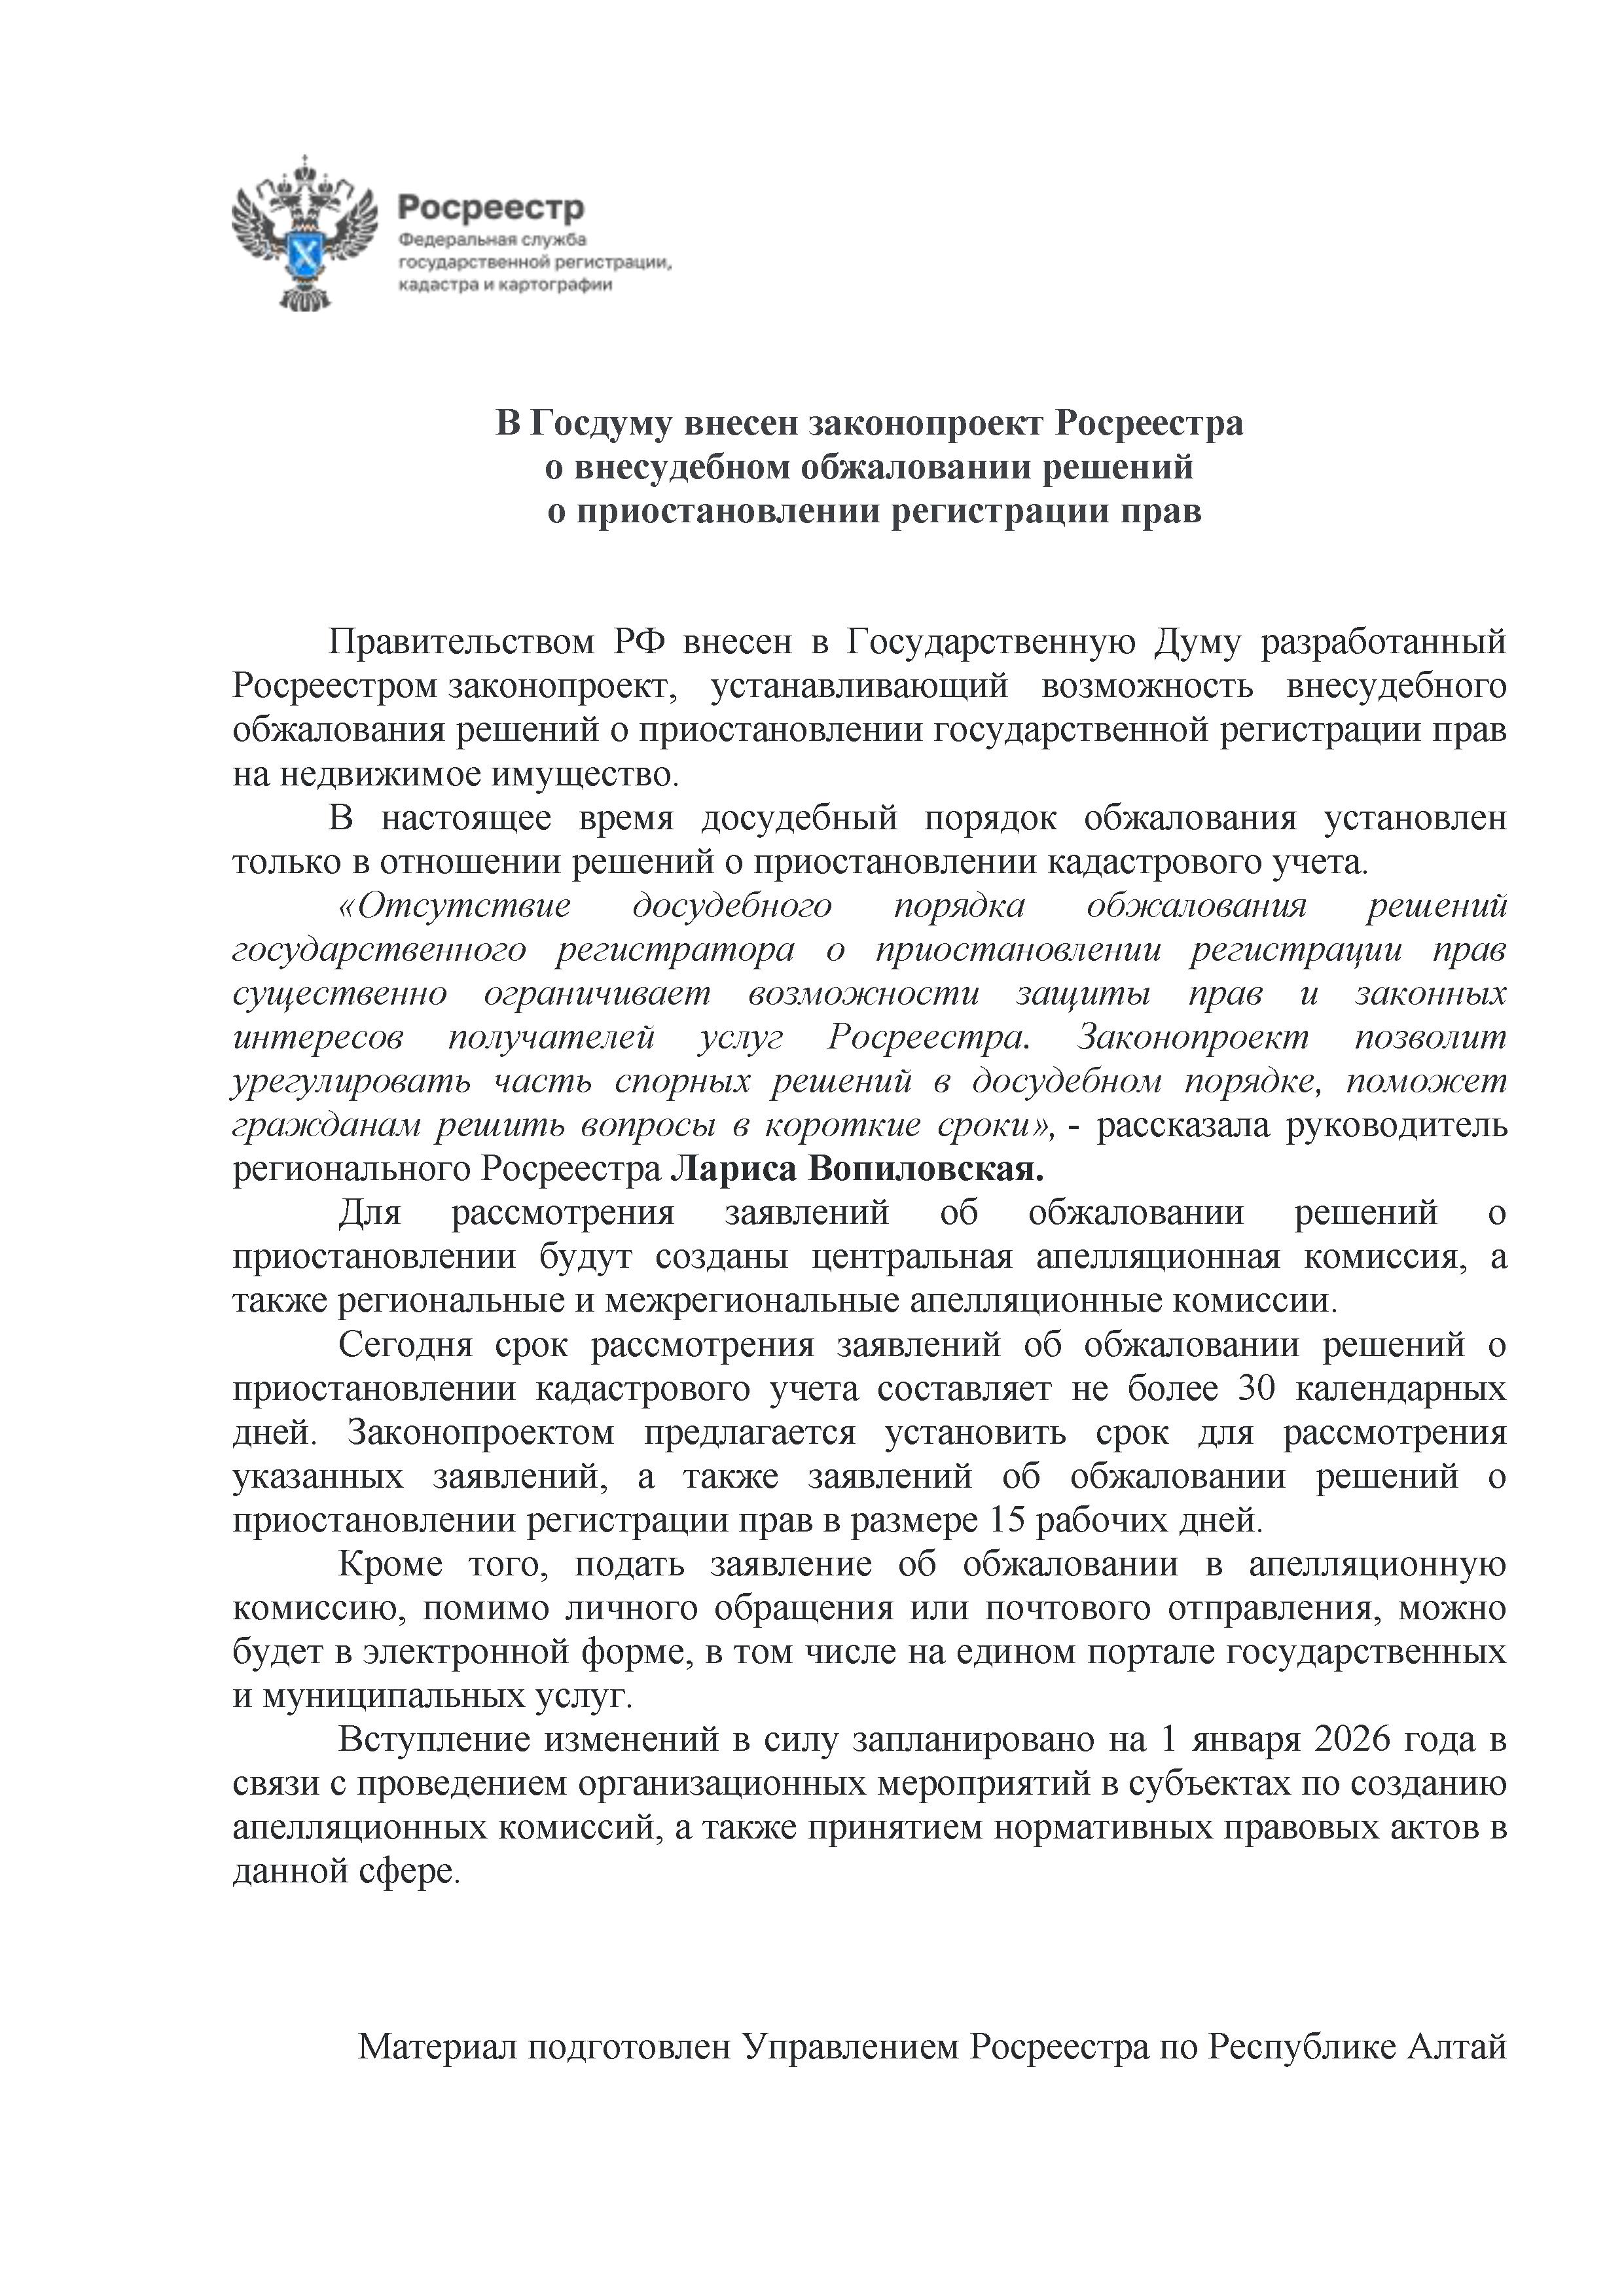 15_В Госдуму внесен законопроект Росреестра.jpg